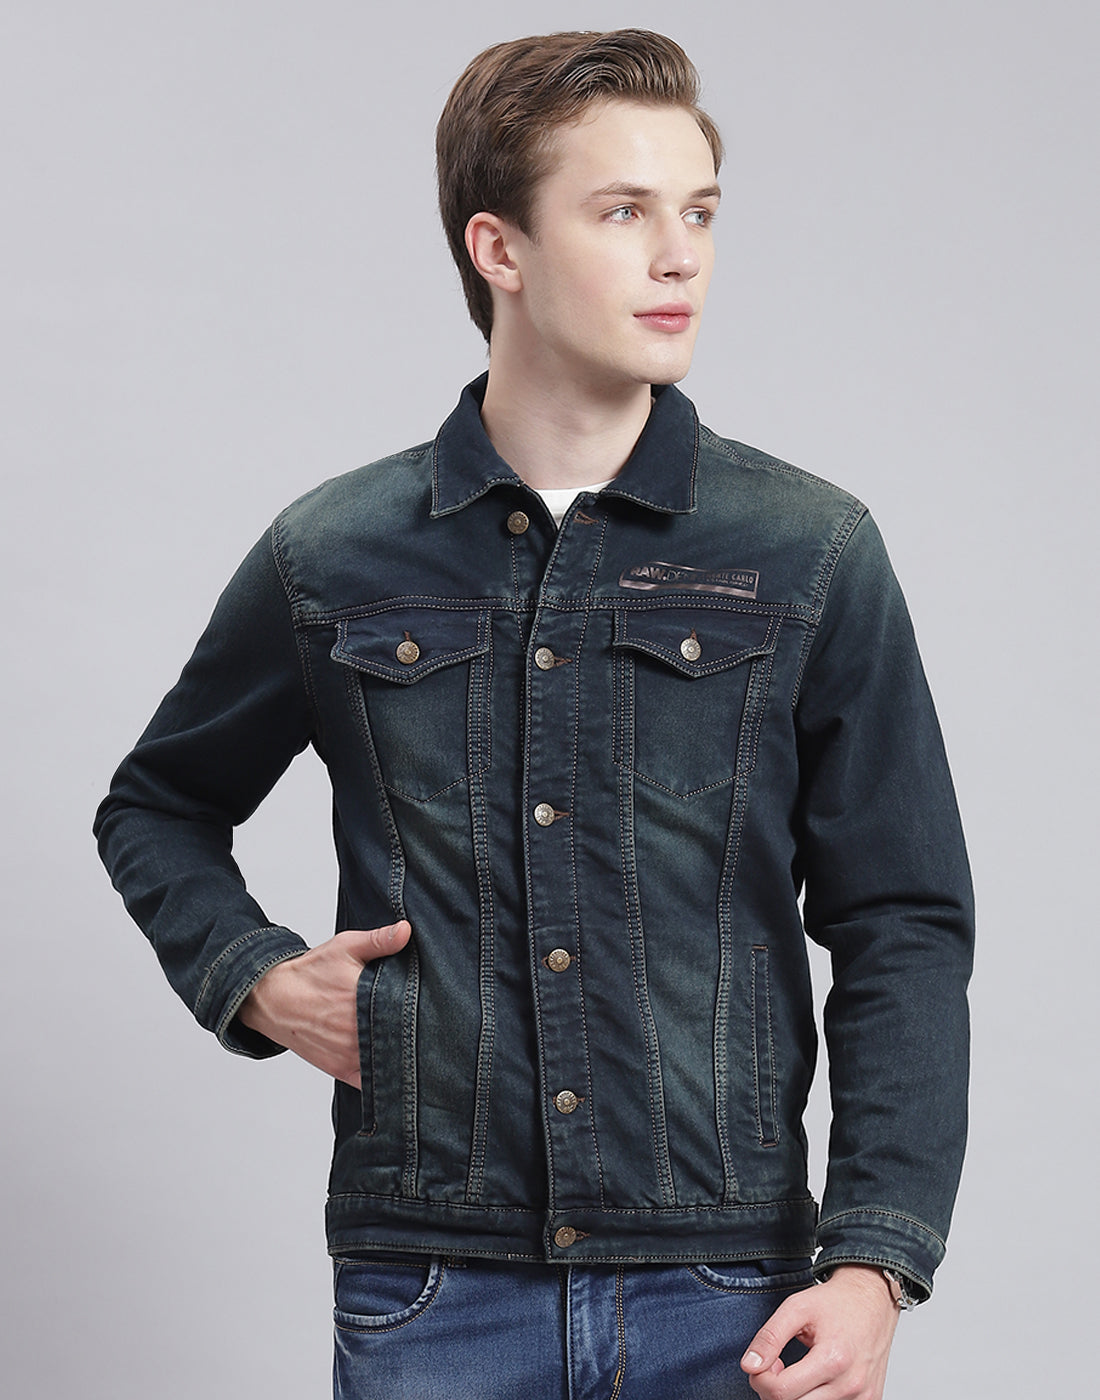 3 ways to style an oversized denim jacket! #tiktokpartner #learnontikt... |  TikTok